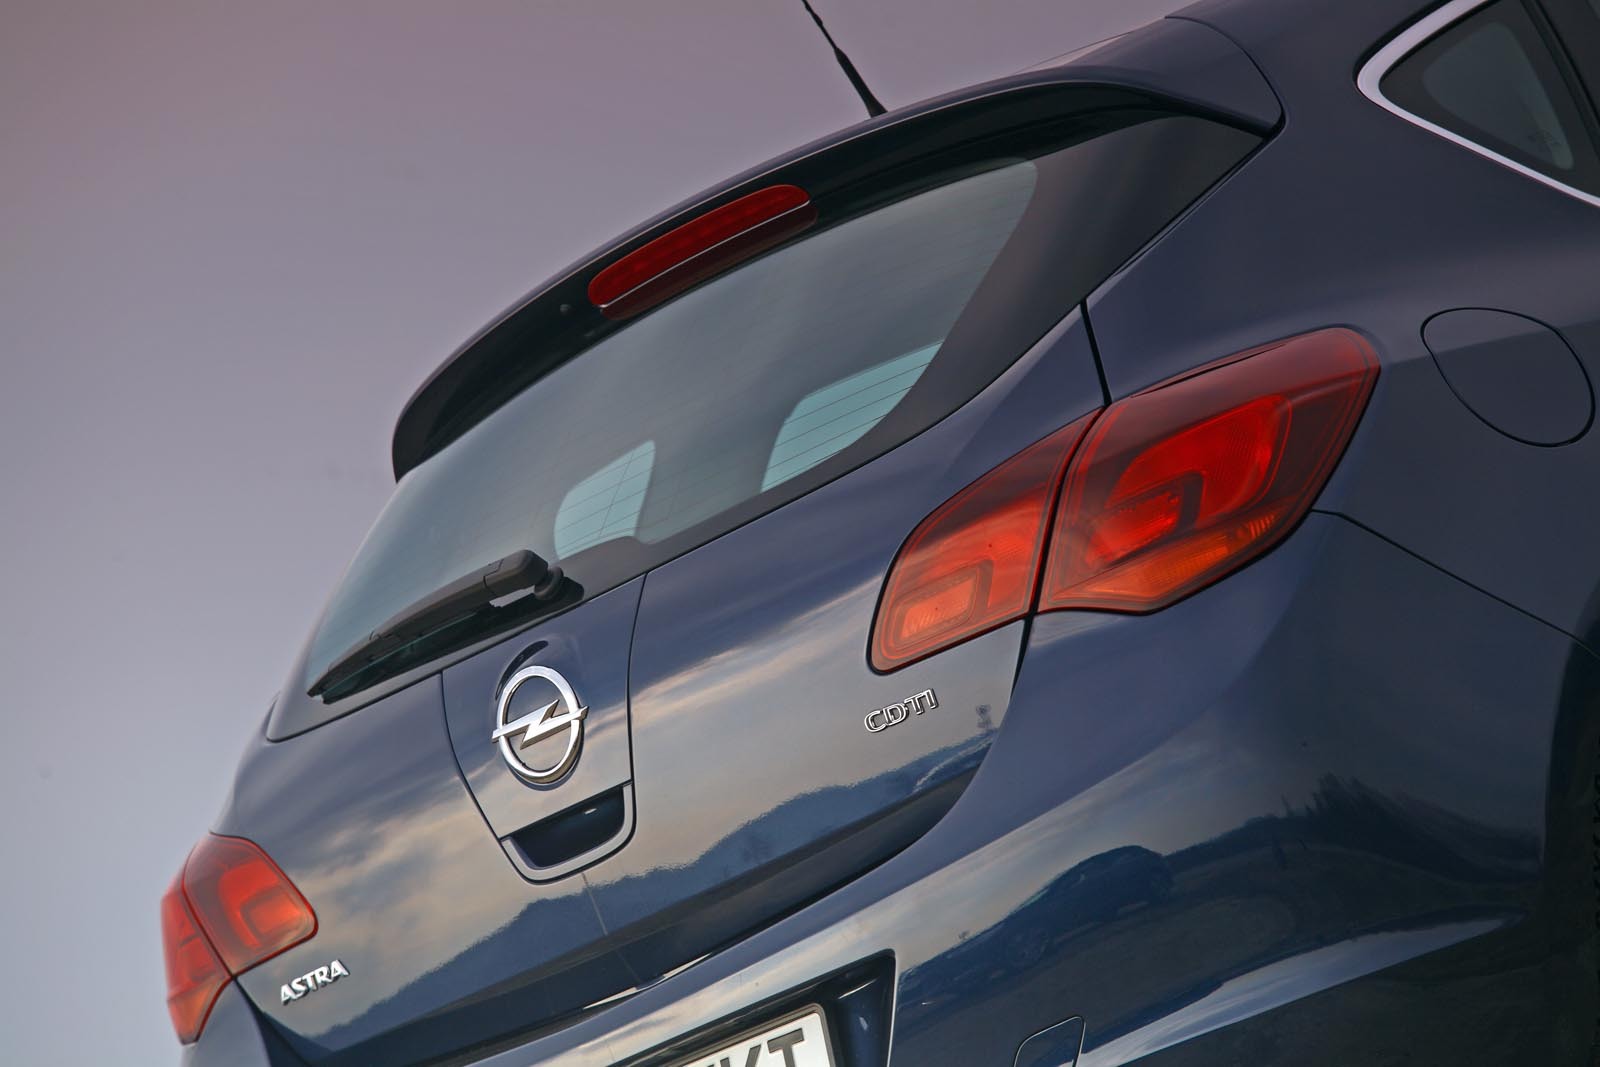 Opel Astra 2.0 CDTi 160 CP - pret de baza 19.685 euro, echipare Enjoy